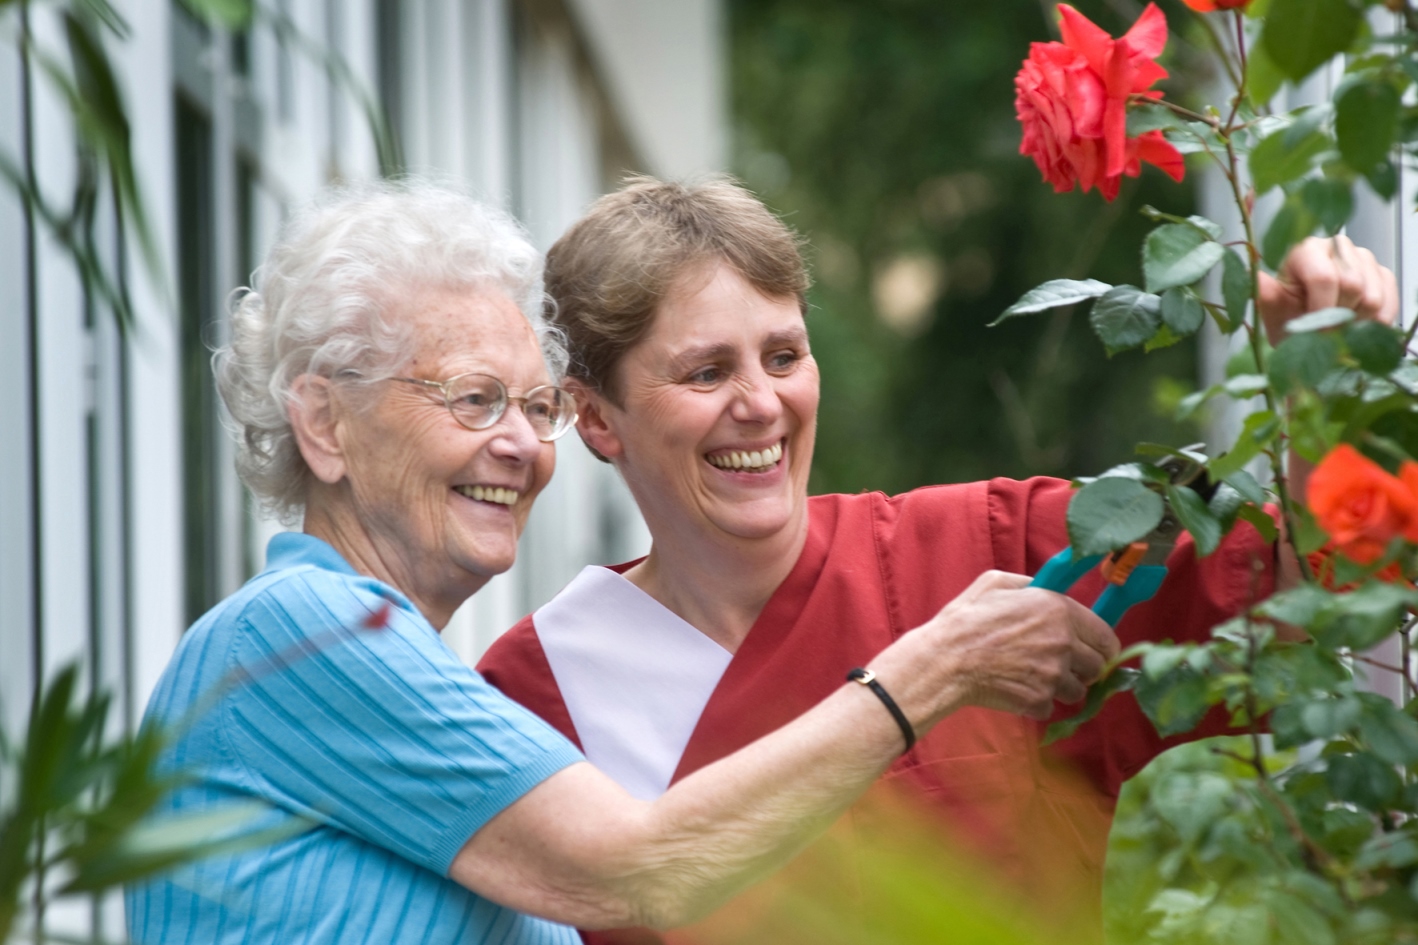 Eine Pflegerin hilft einer Seniorin bei der Gartenarbeit. Gemeinsam schneiden sie Rosen.